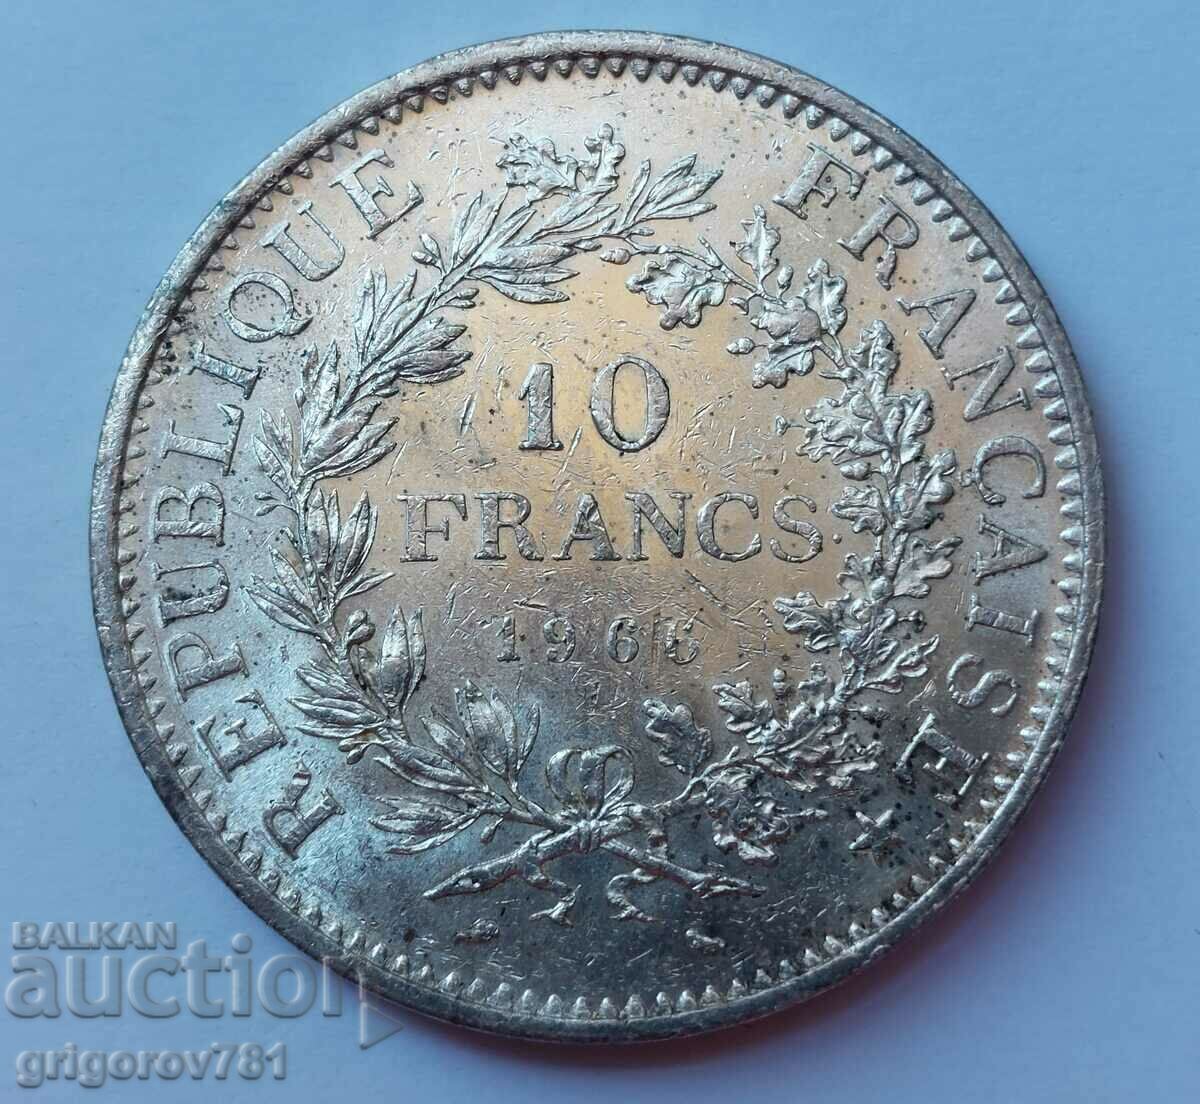 Ασημένιο 10 φράγκα Γαλλία 1966 - ασημένιο νόμισμα # 11